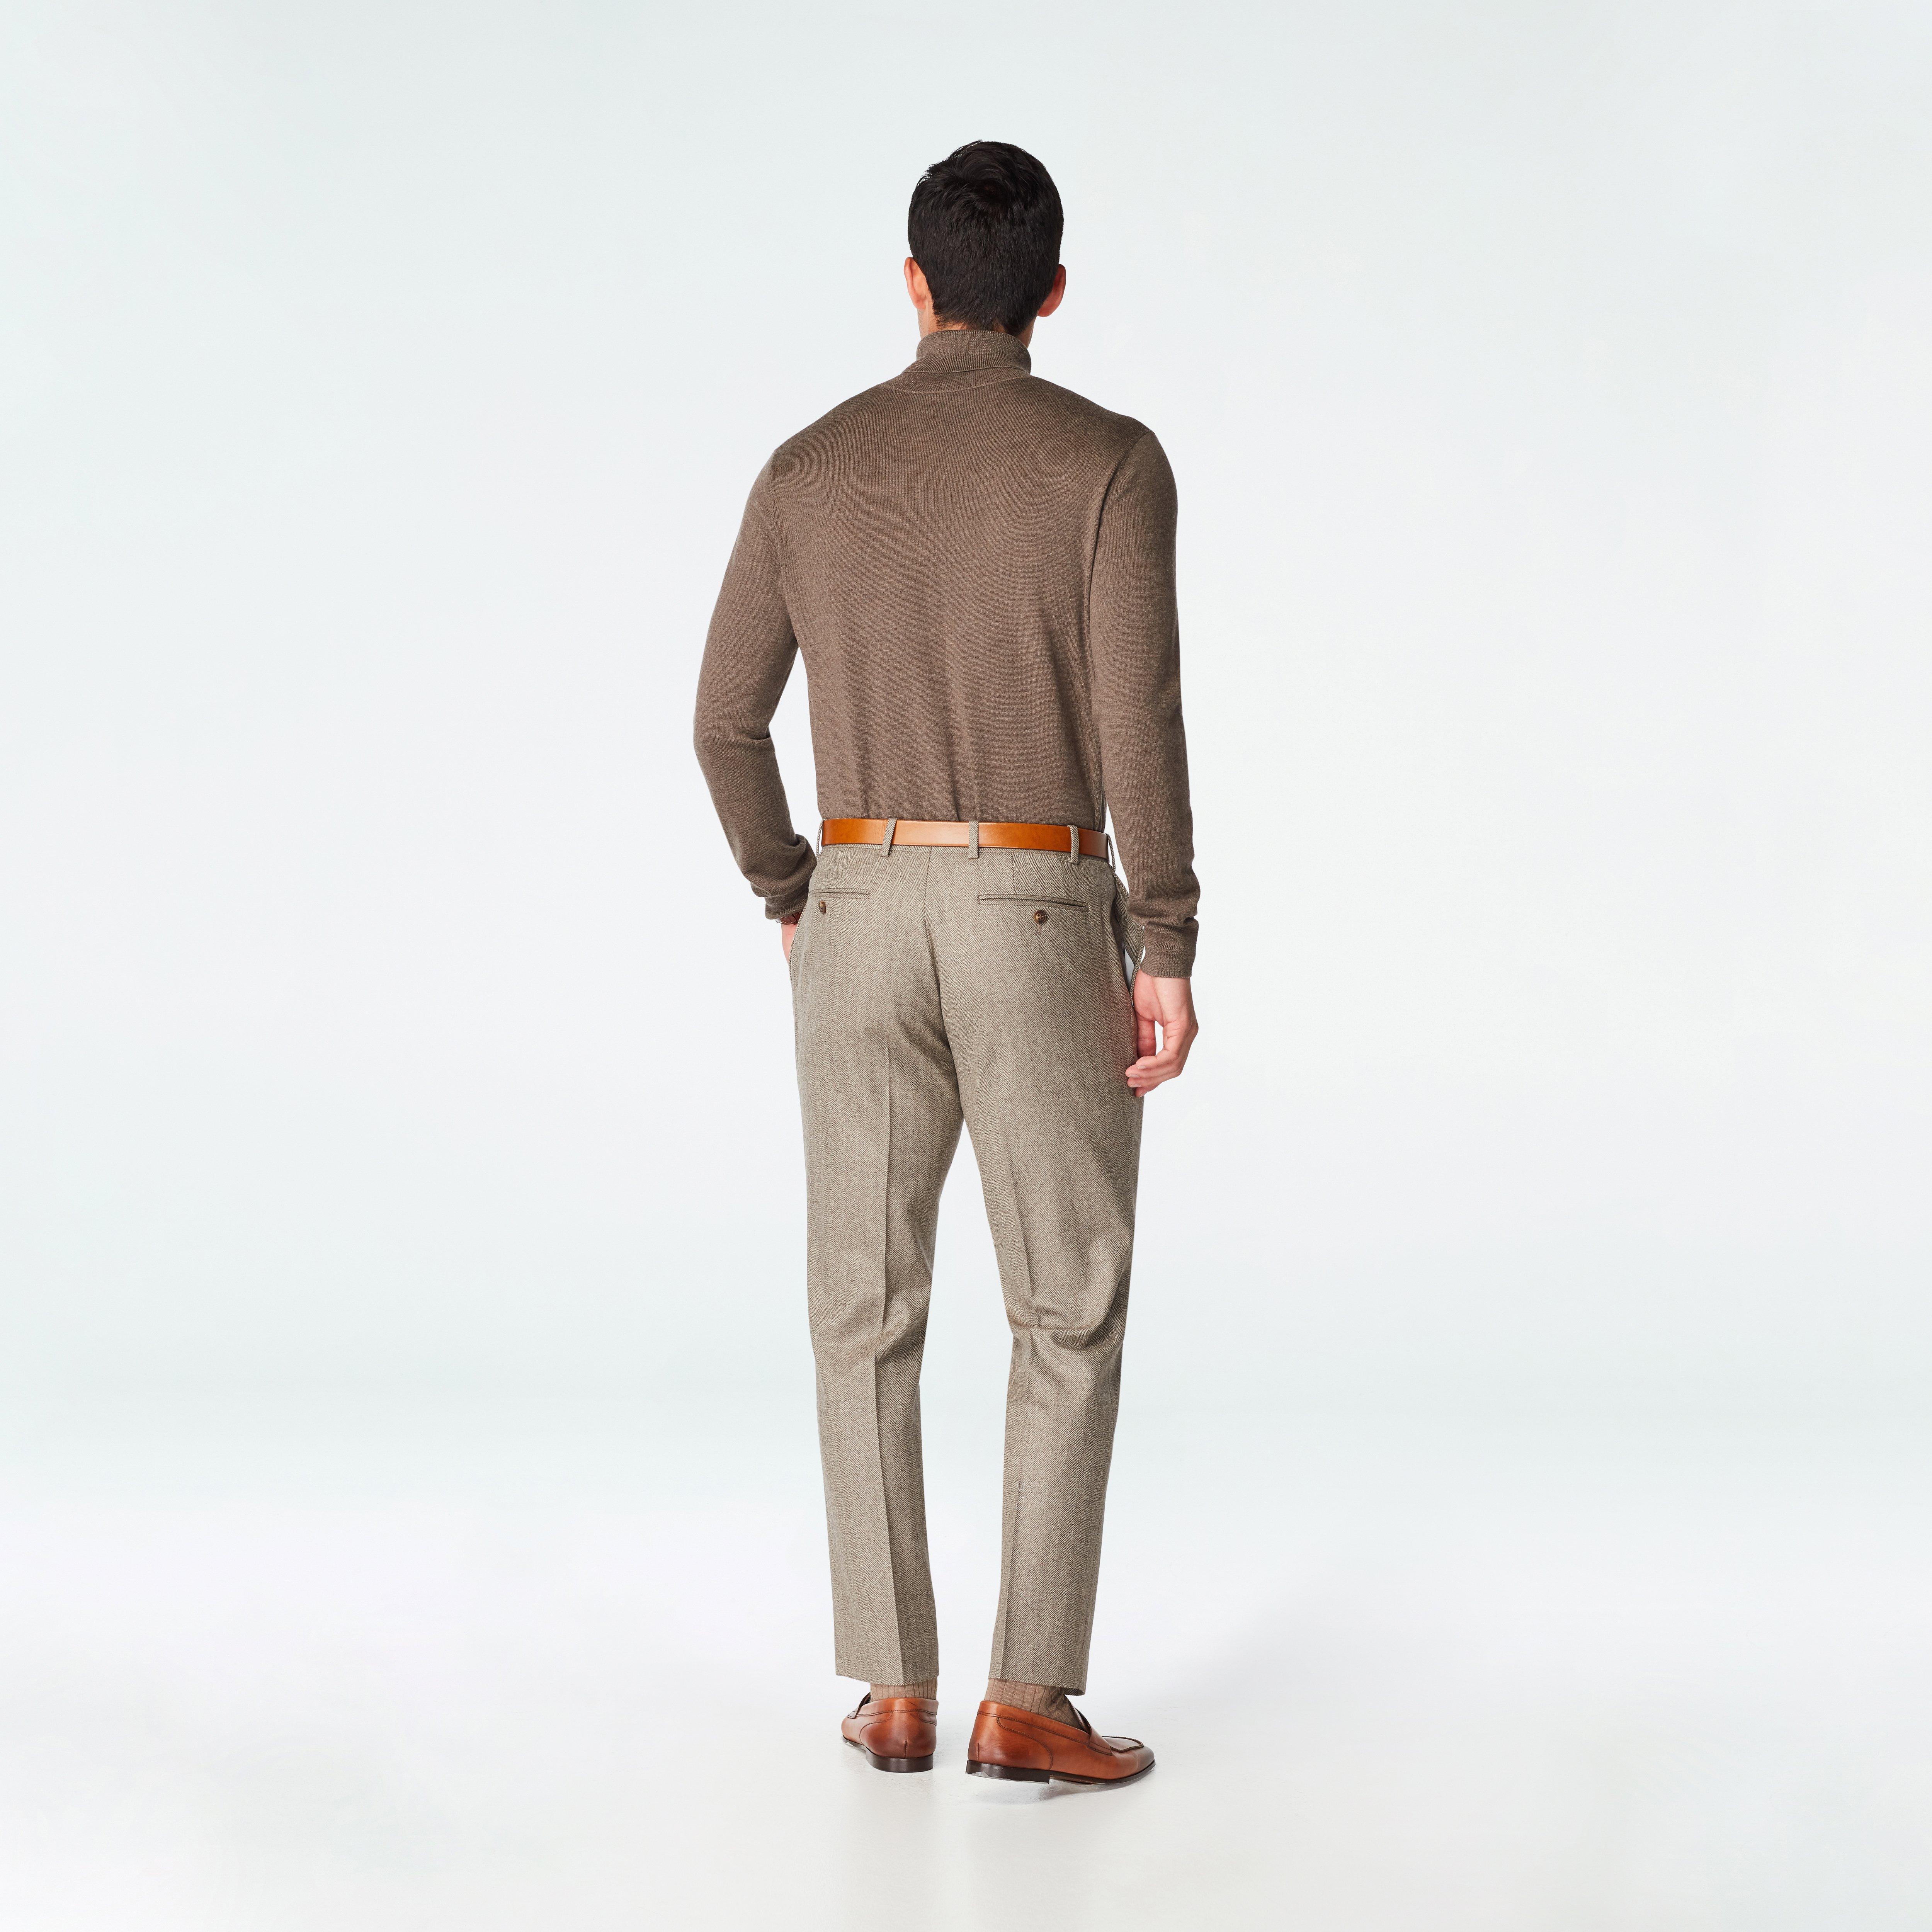 Dalton Herringbone Light Brown Suit